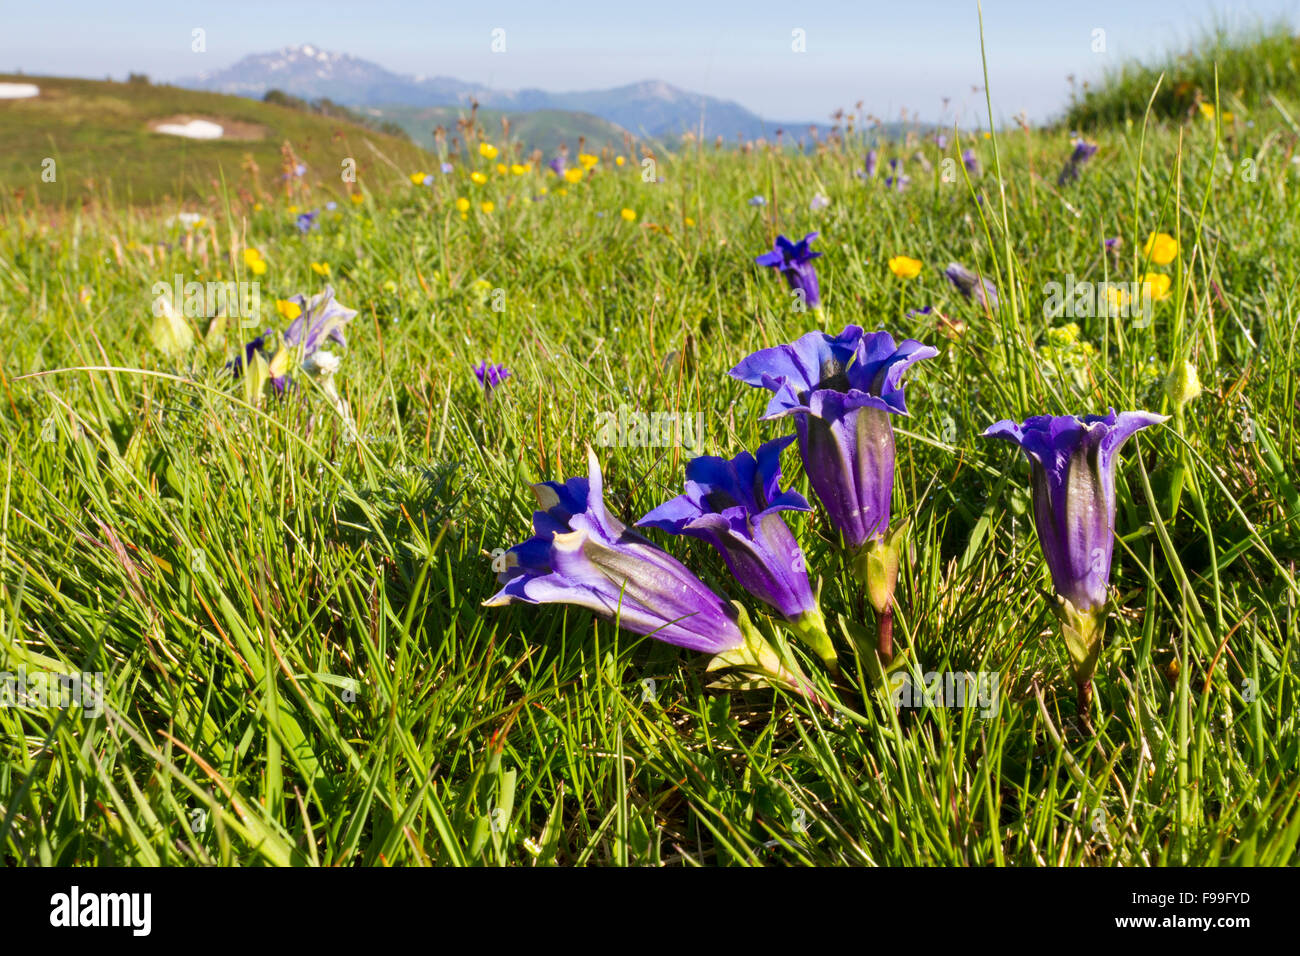 Trumpet Gentians (Gentiana acaulis) flowering in alpine pasture. Col de Pailhères, Ariege Pyrenees, France. June. Stock Photo